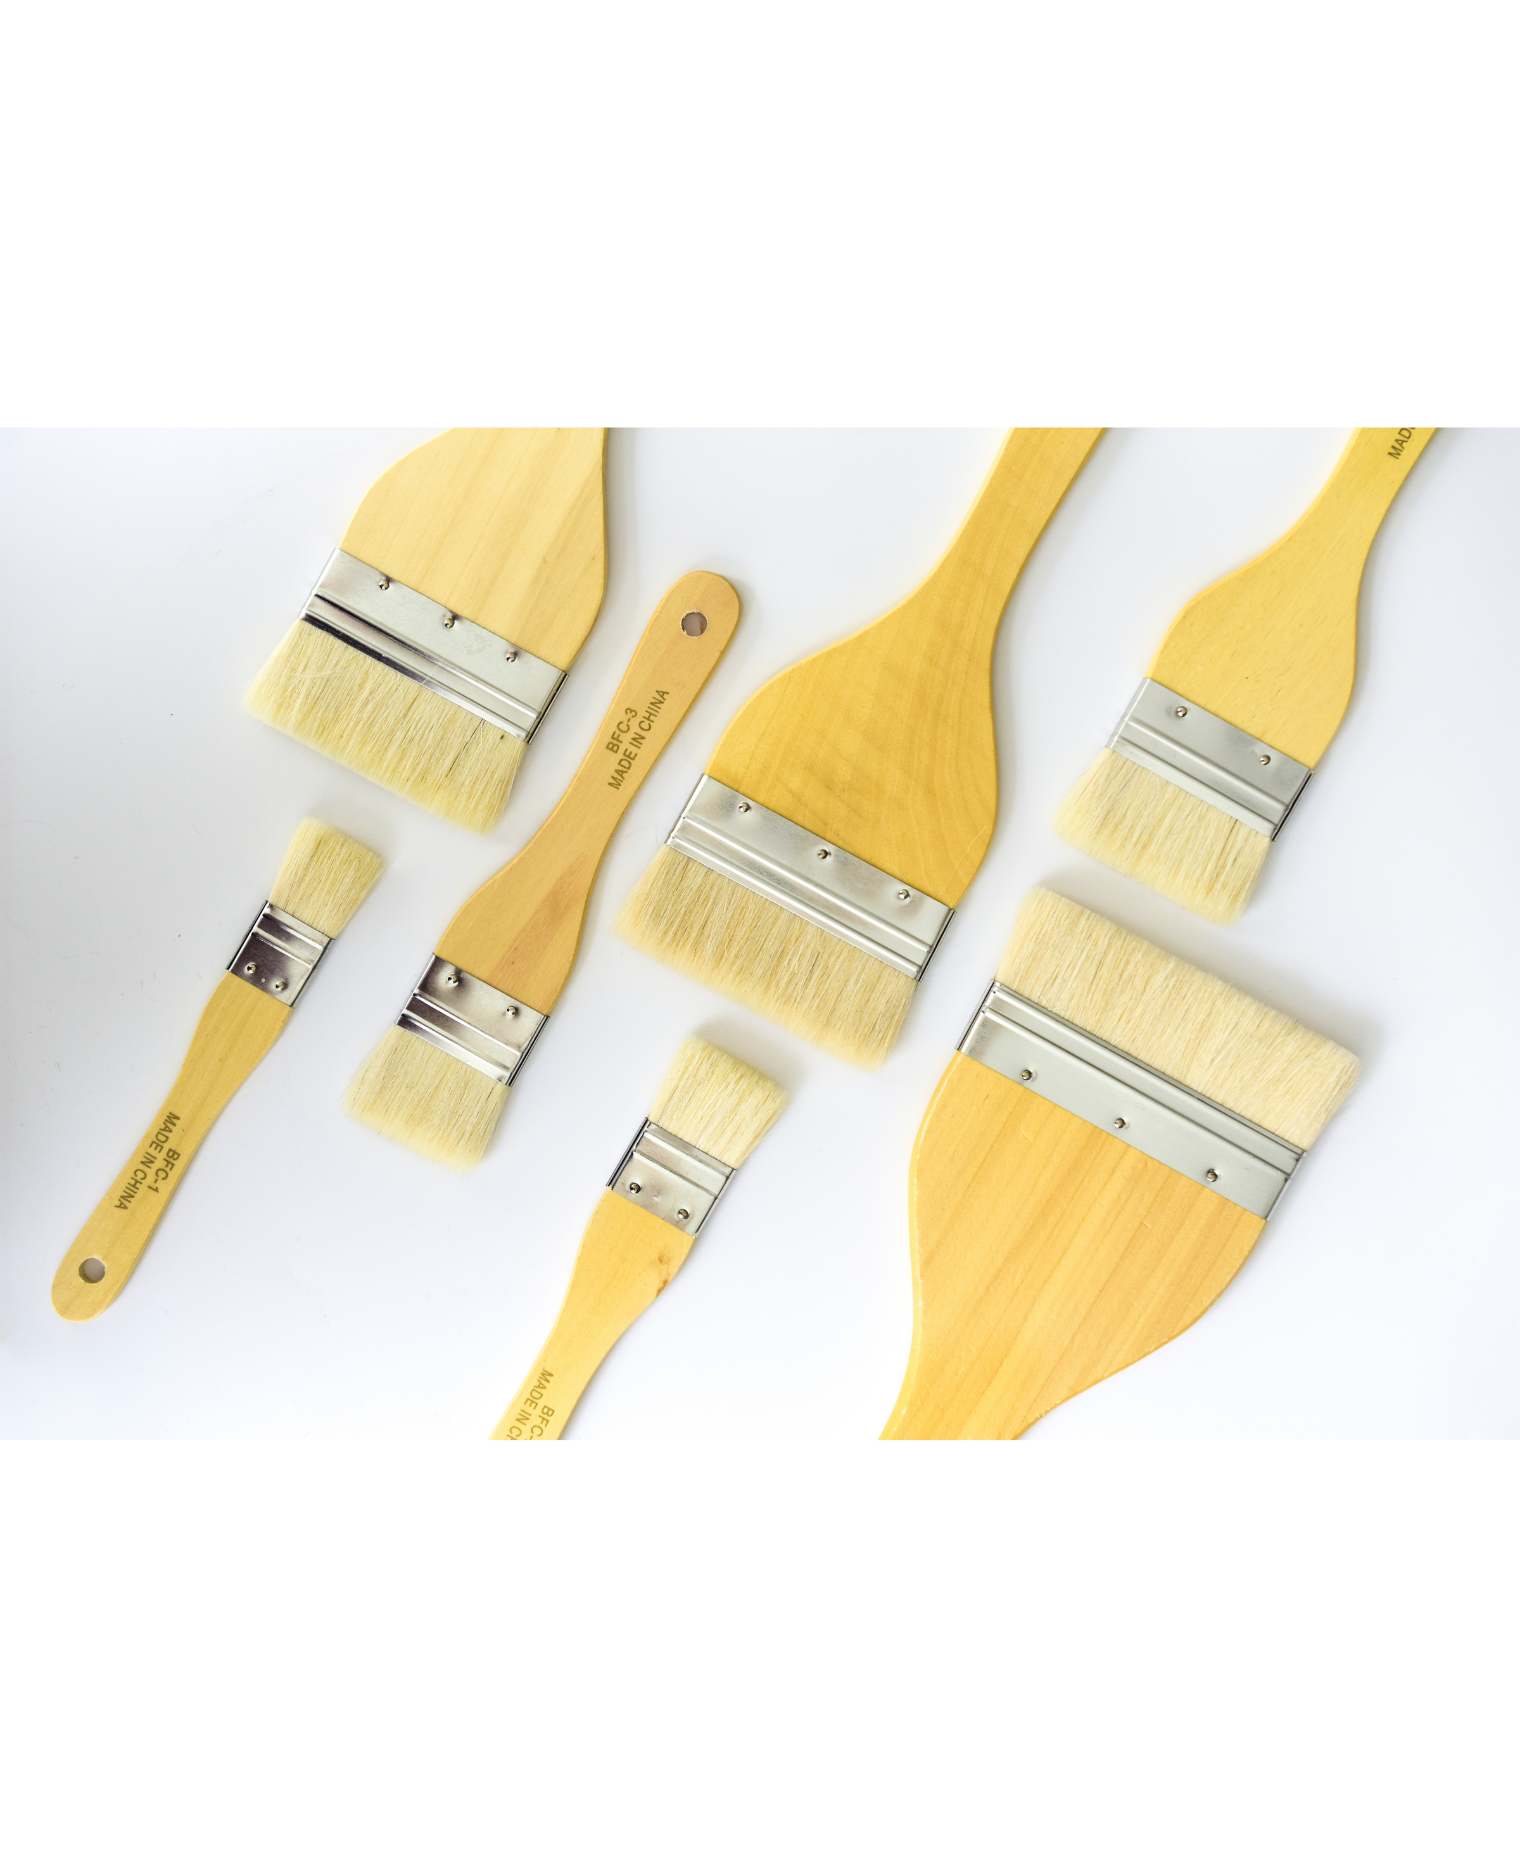 Yasutomo Flat Wash Hake Brush